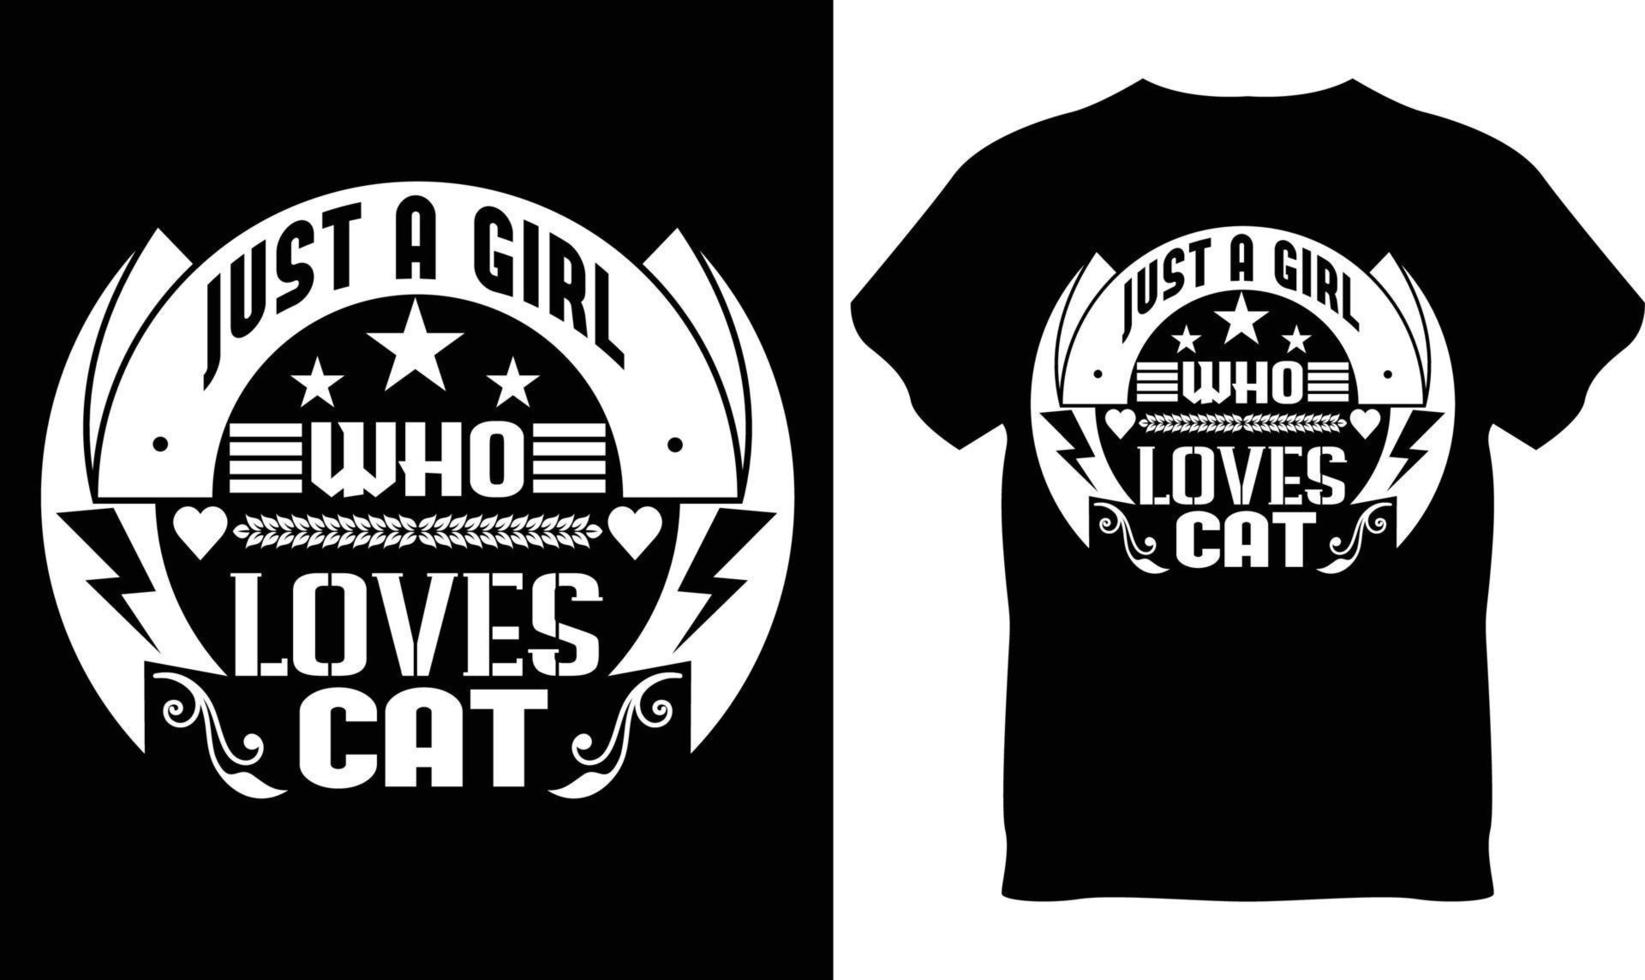 diseño de camiseta amante de los gatos vector